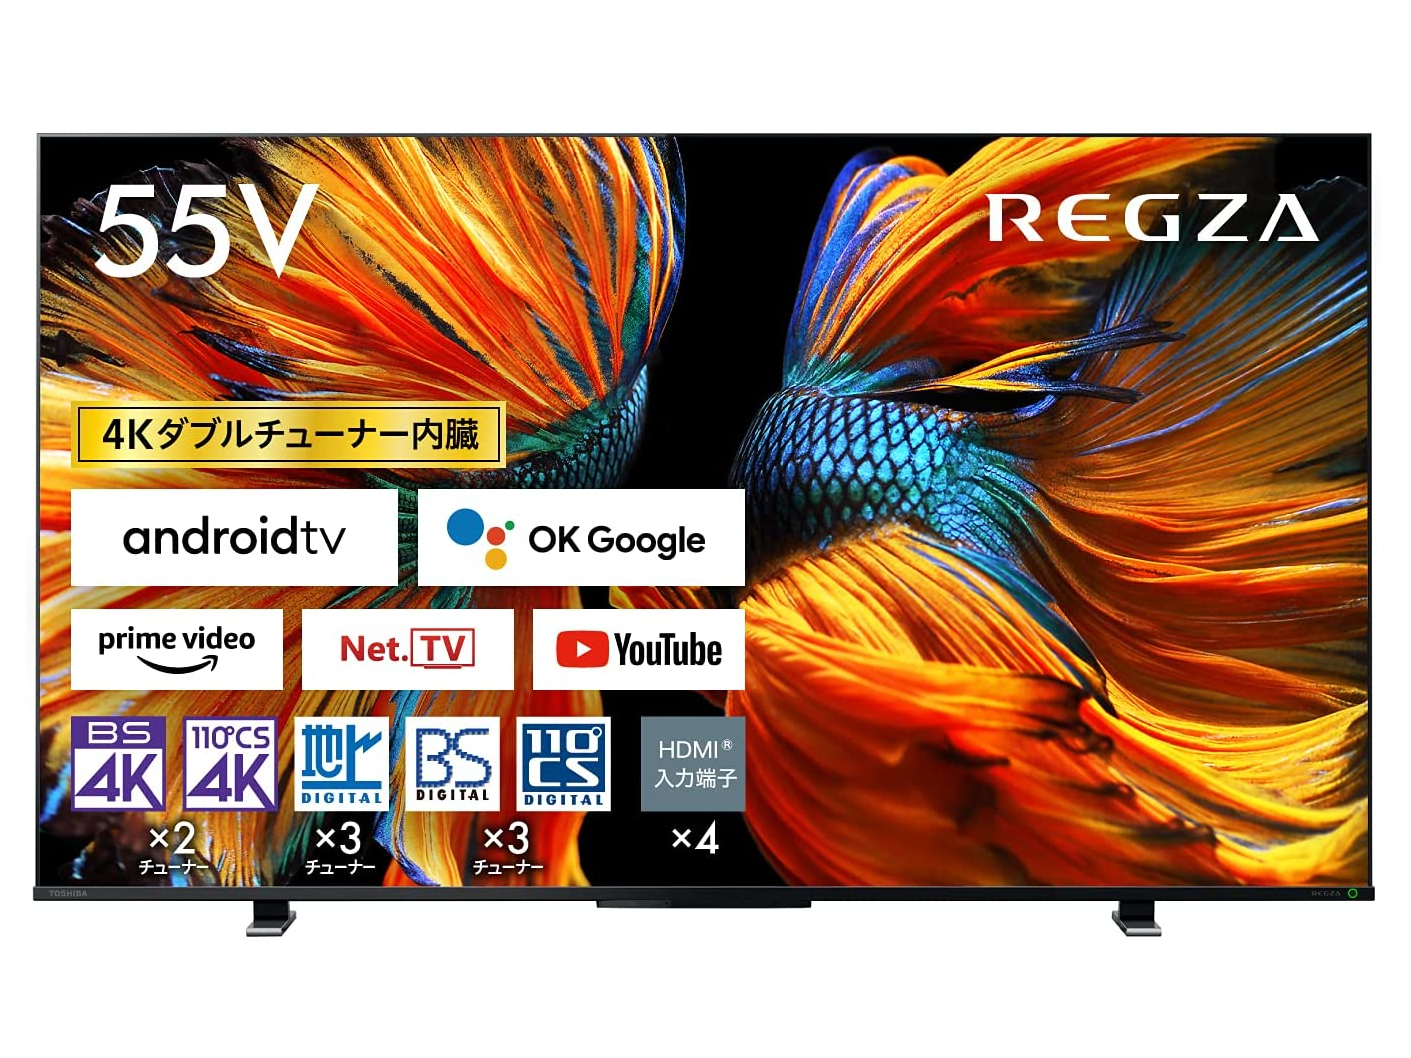 本日みつけたお買い得品】55型TV「REGZA」が約2万円引き。4K液晶搭載